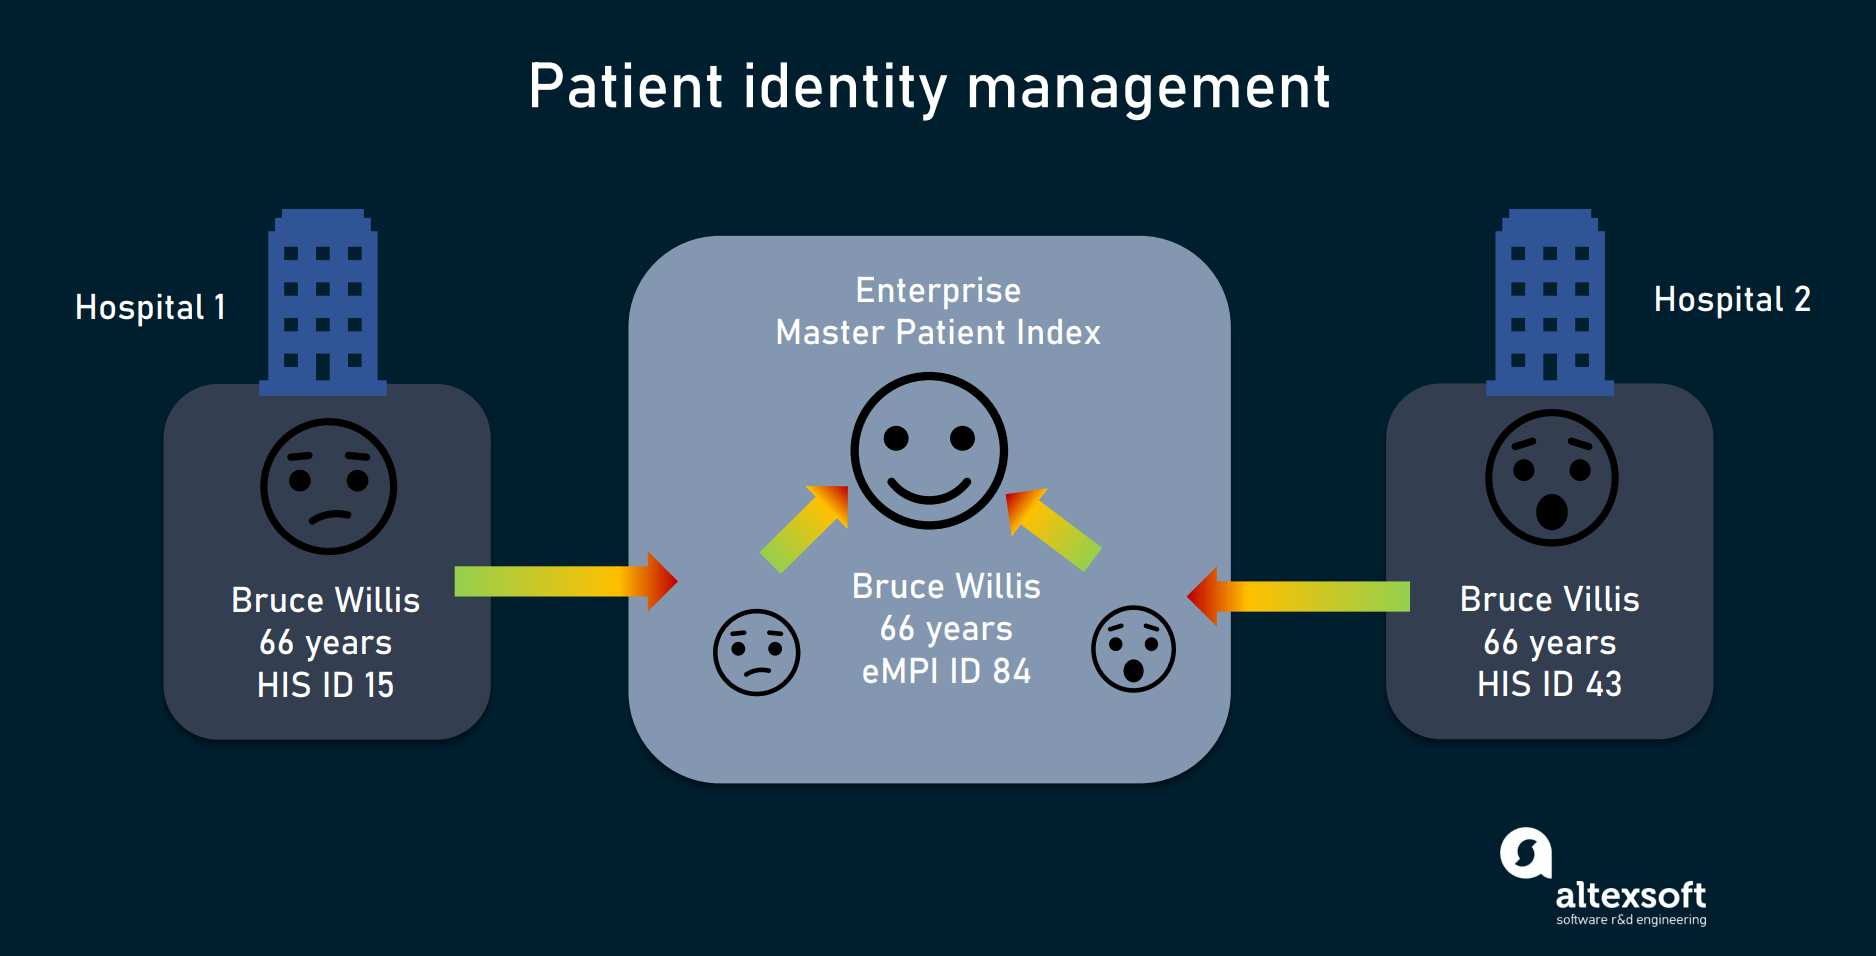 Patient identity management with Enterprise Master Patient Index